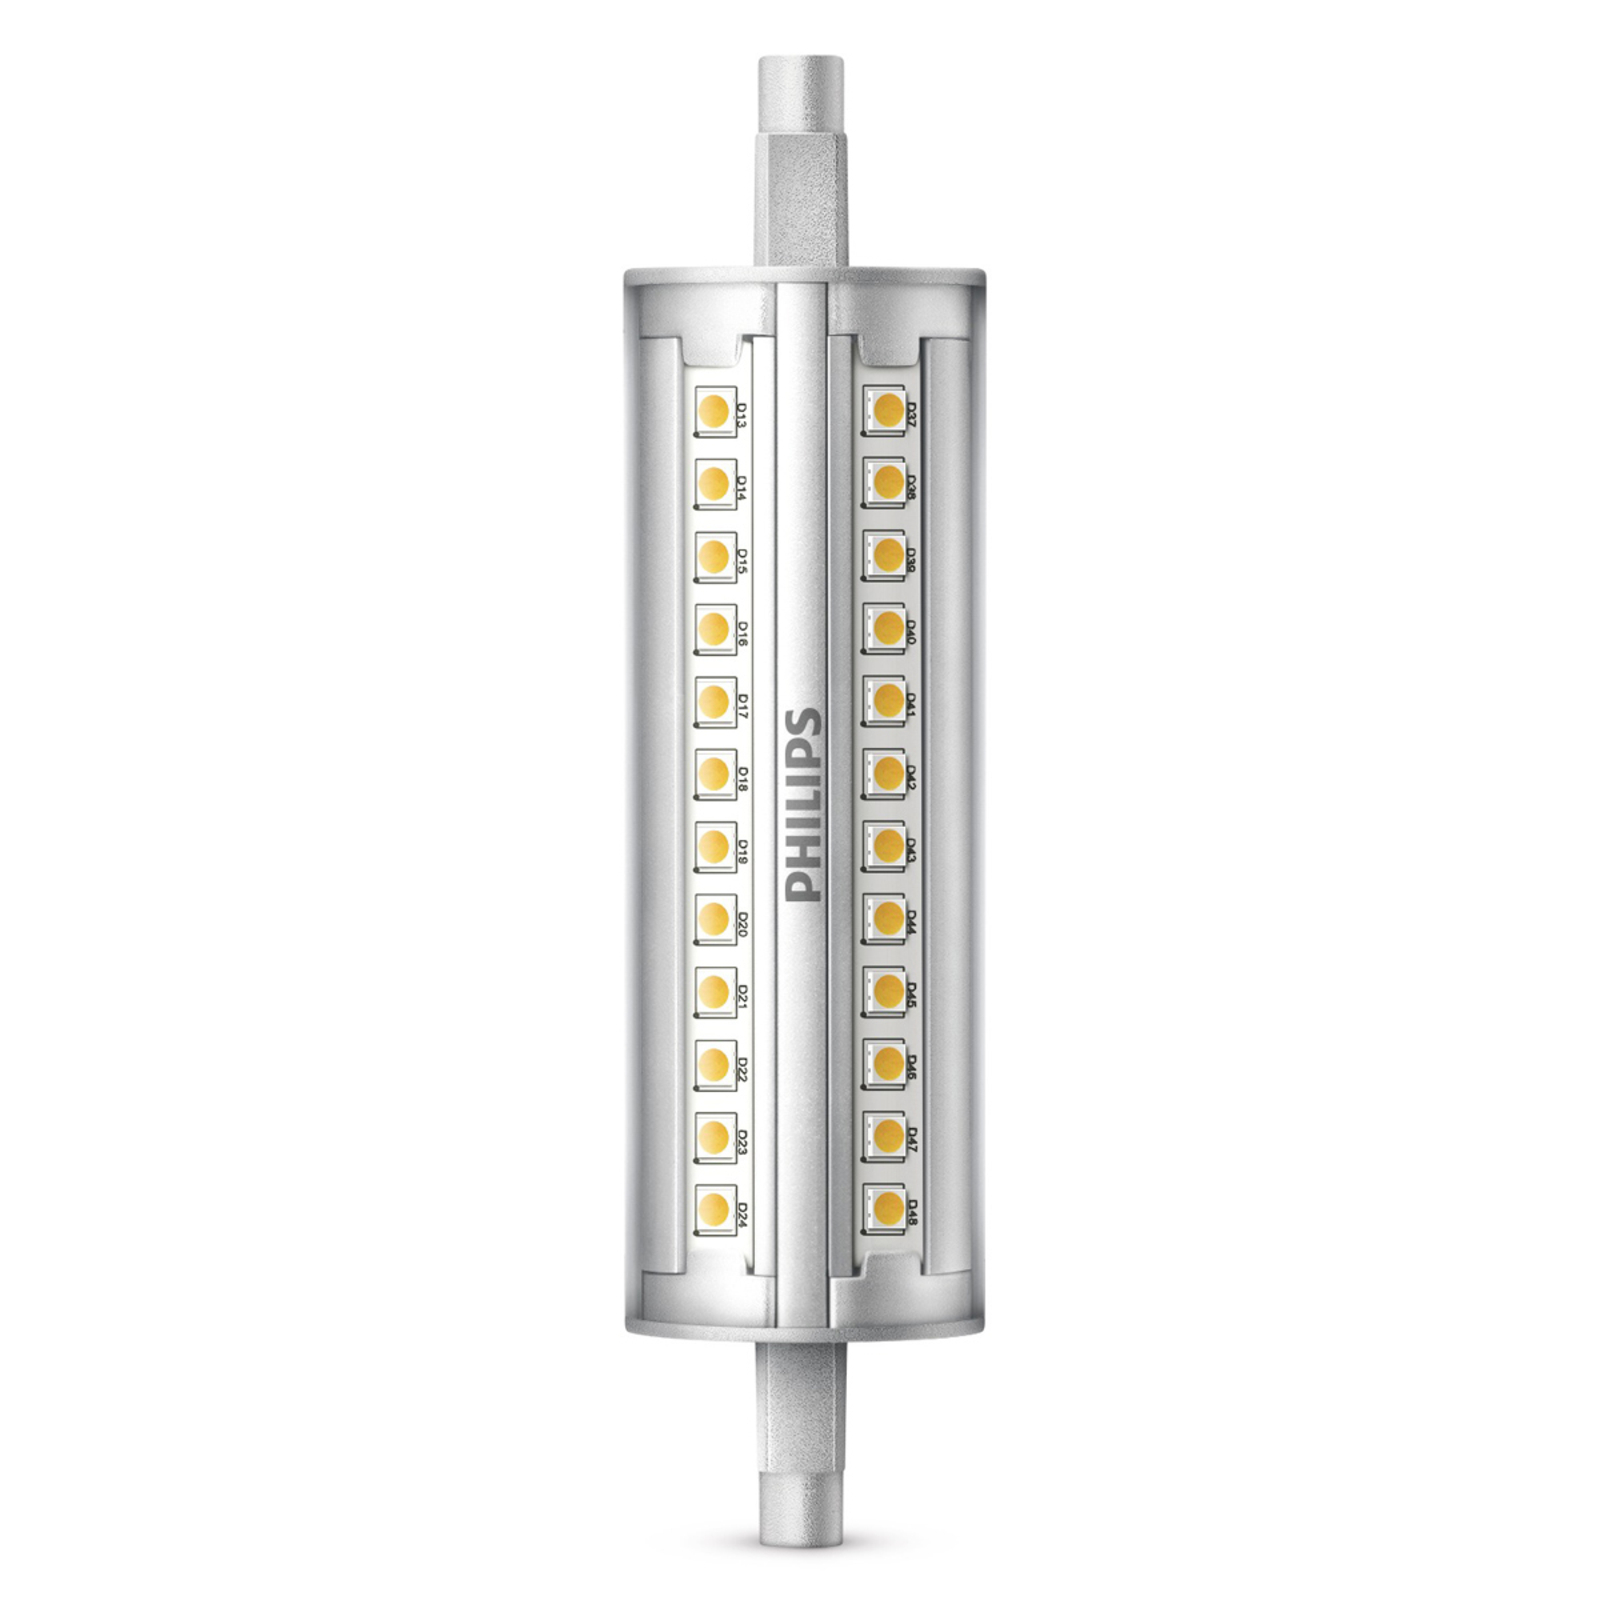 Bombilla LED tipo barra R7s 14W 830, atenuable